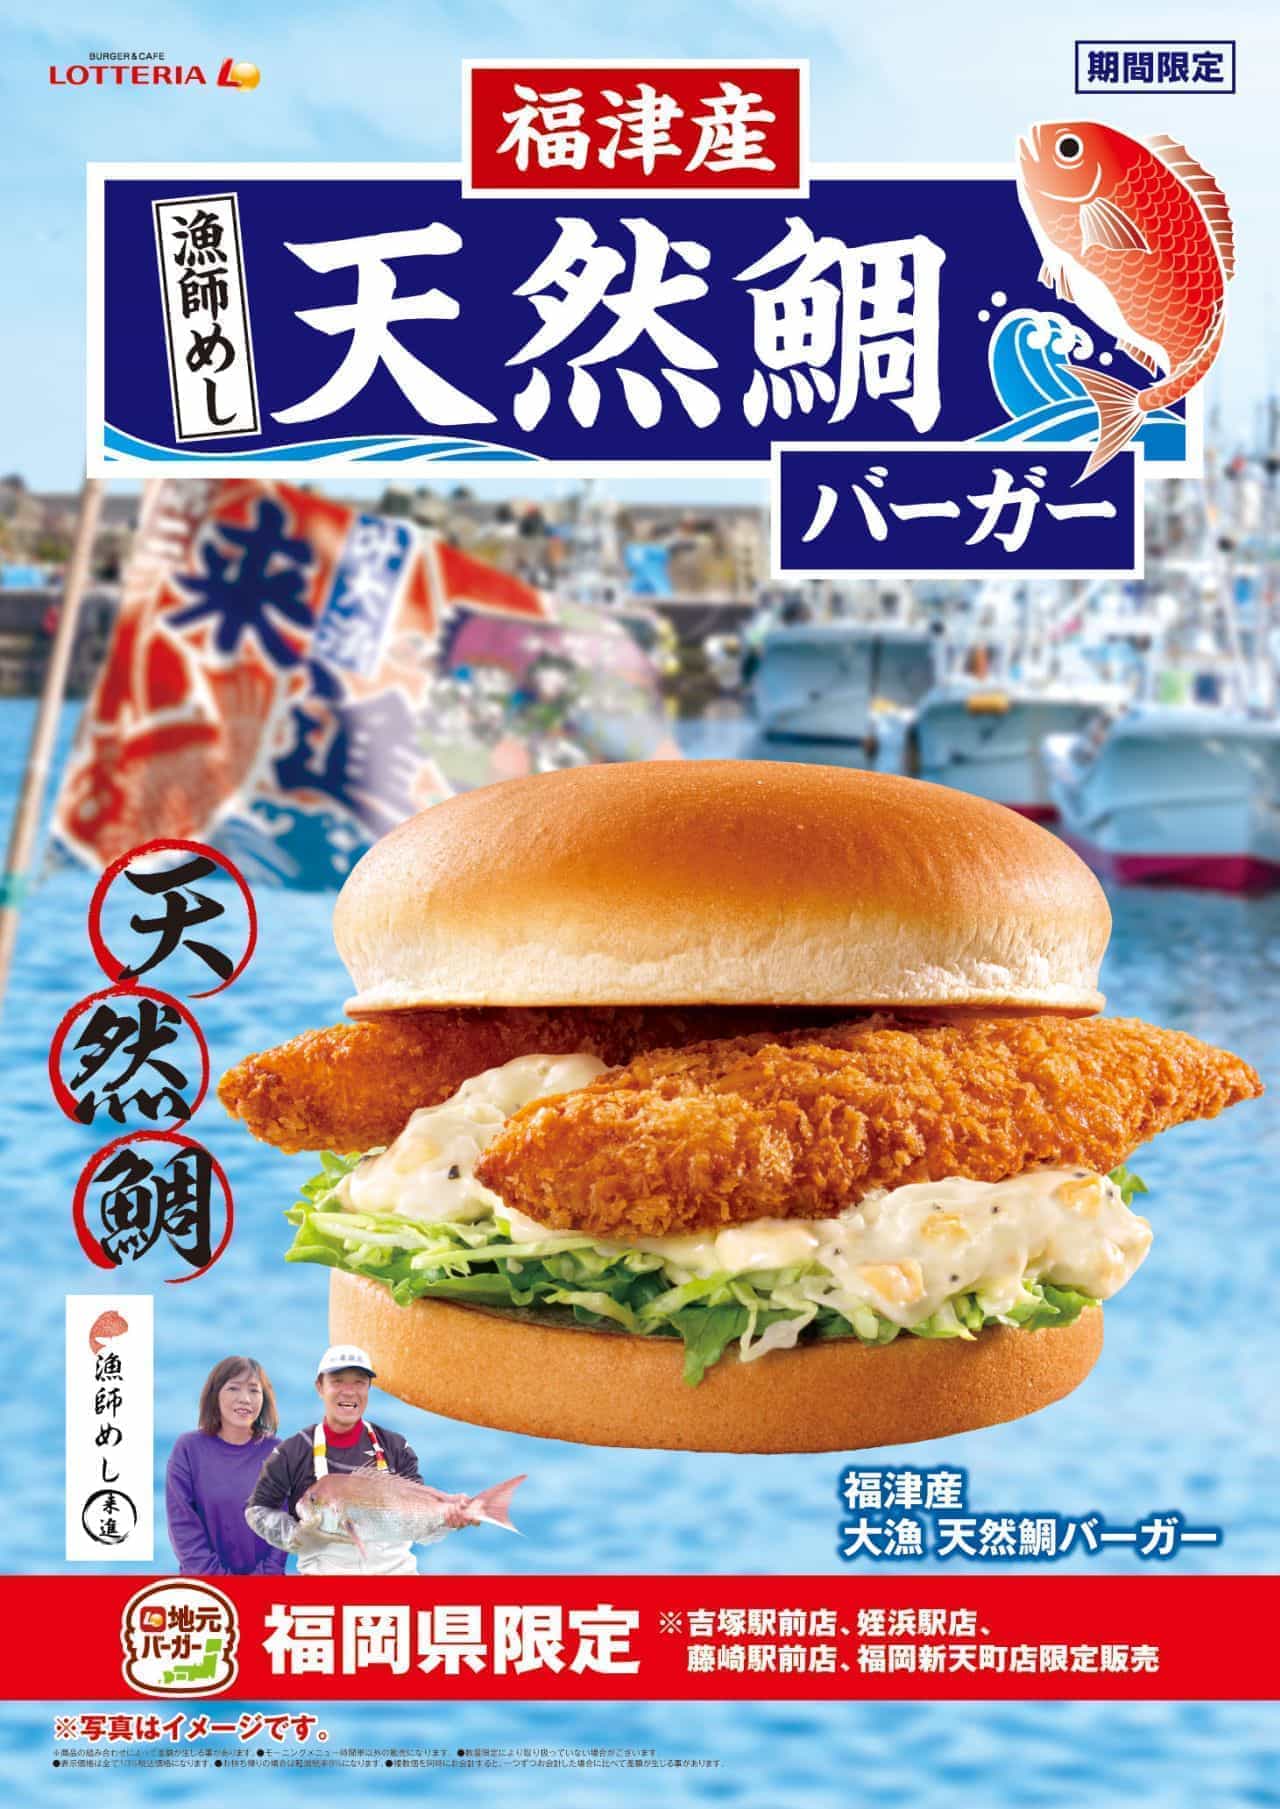 Fukutsu Natural Sea Bream Burger" and "Fukutsu Big Fish Natural Sea Bream Burger" limited to Lotteria in Fukuoka.